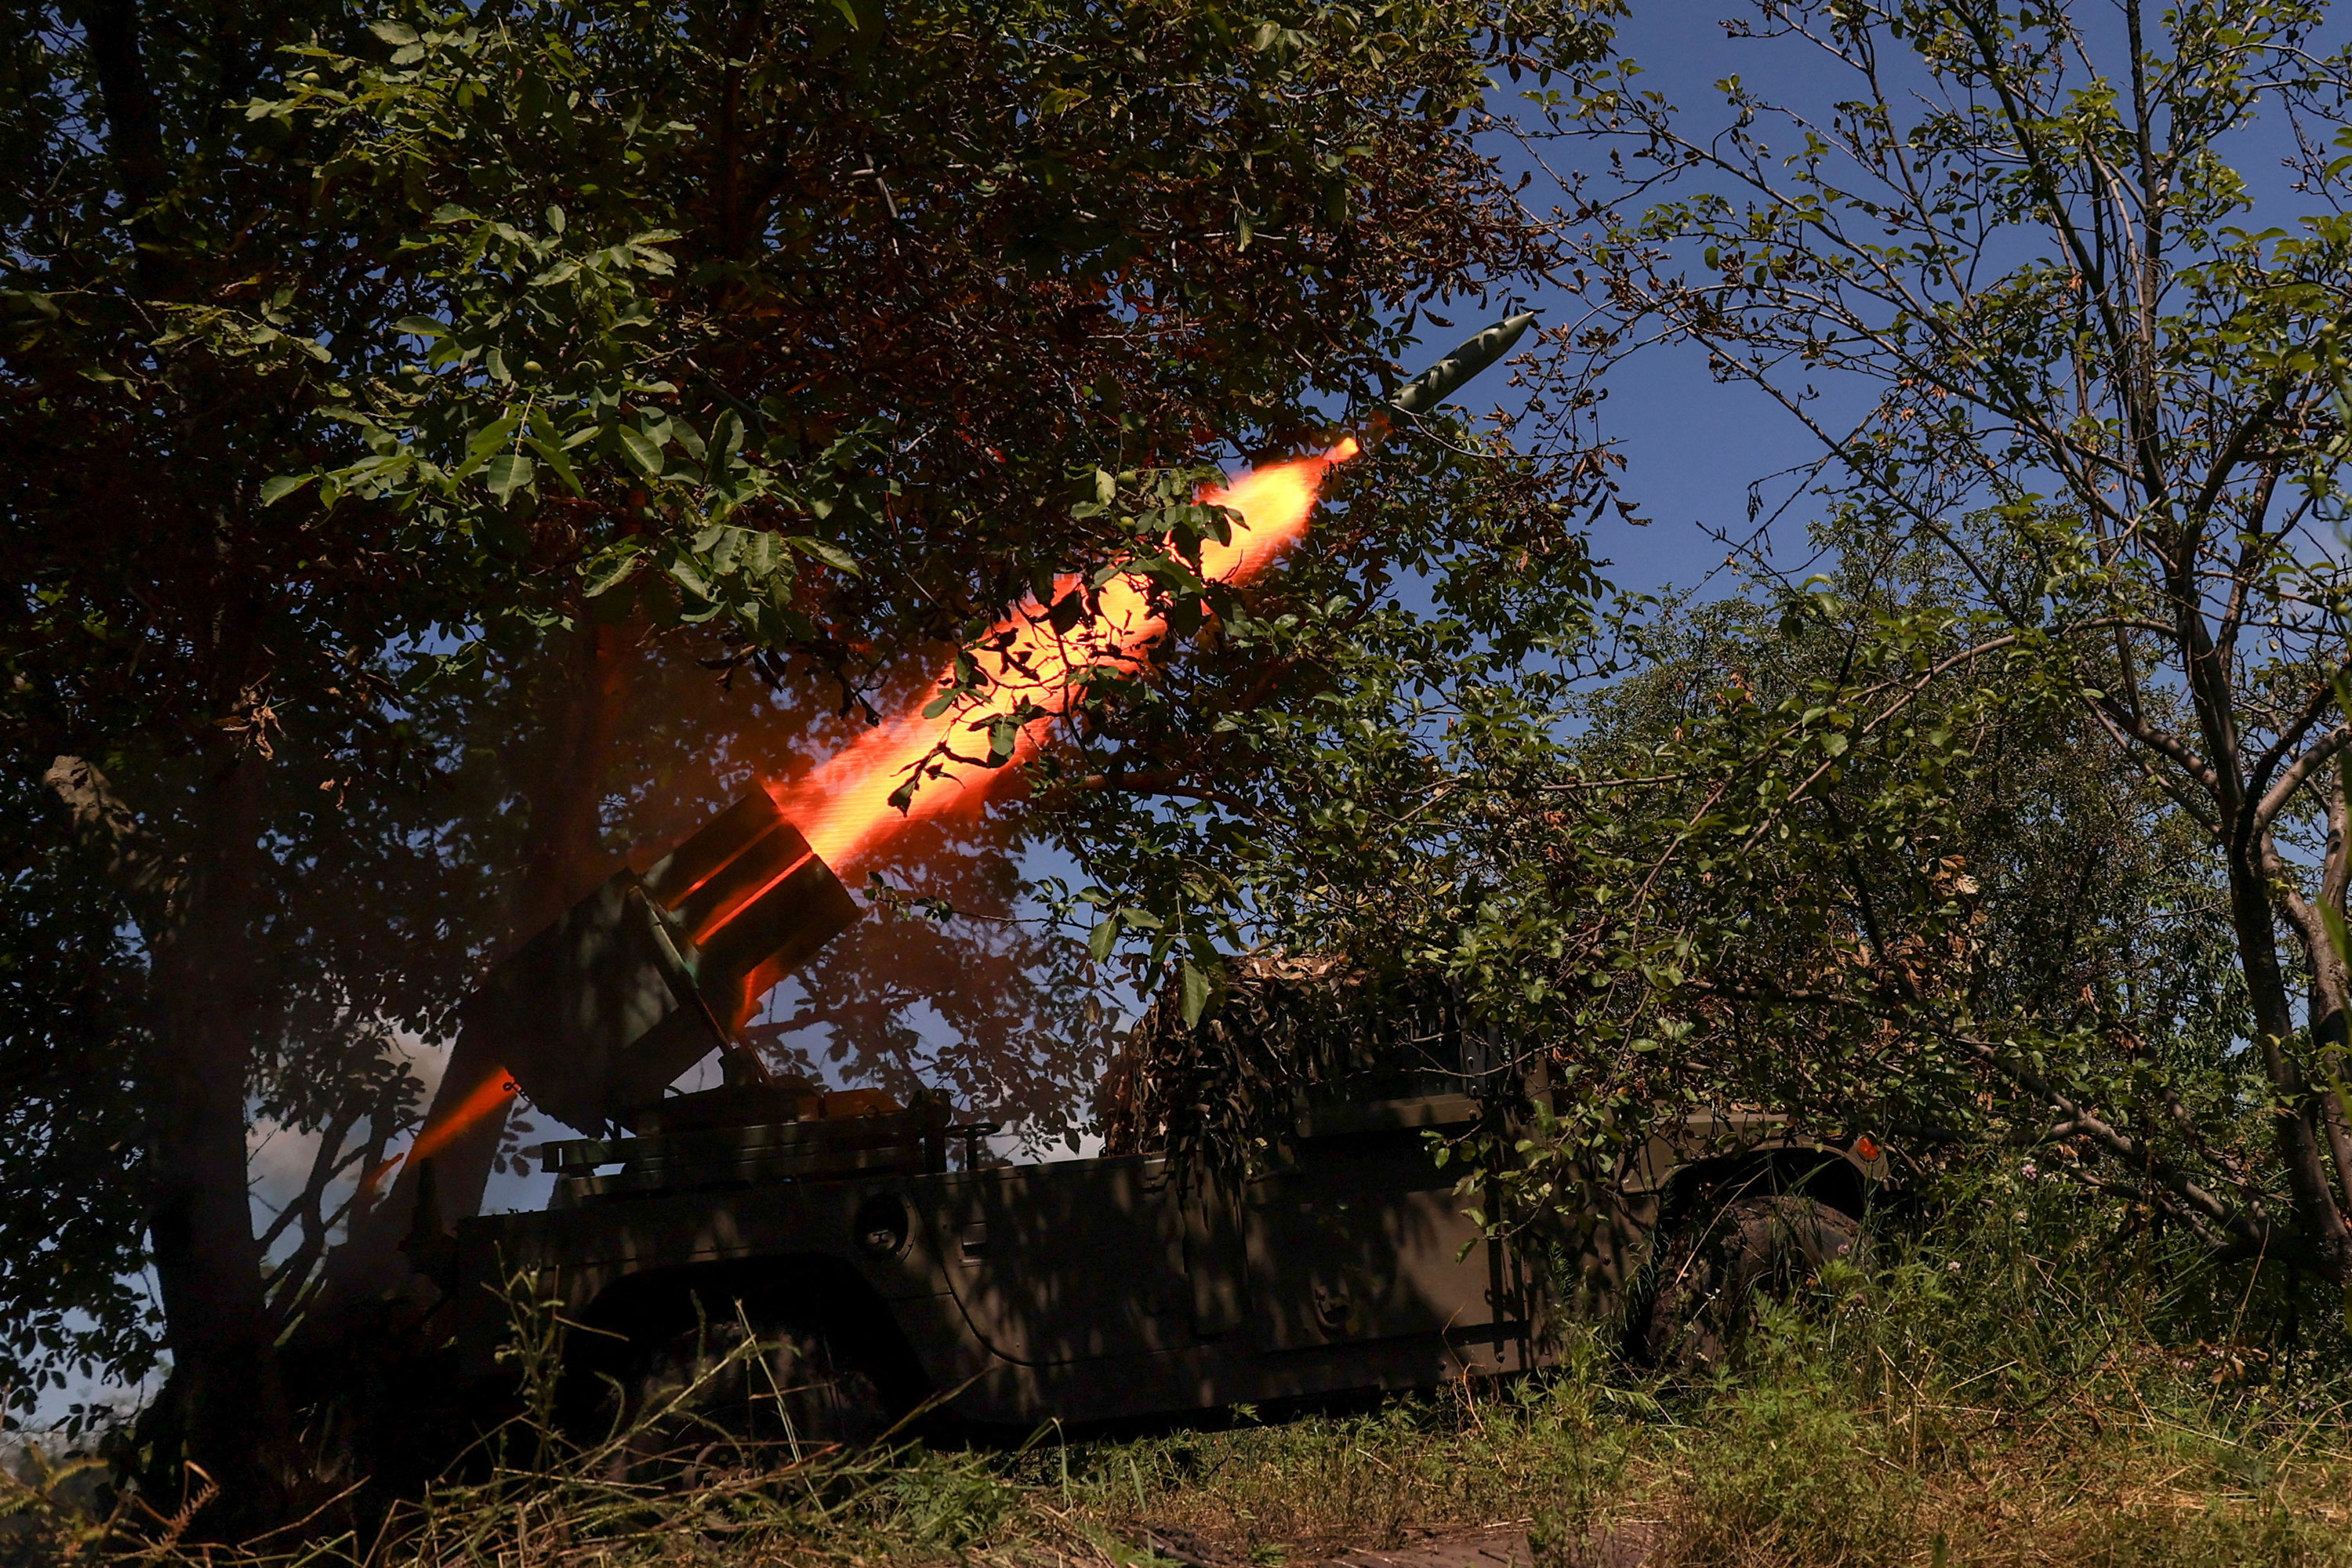 Ukrainian servicemen fire a rocket at Russian troops near the town of Bakhmut in Donetsk region of Ukraine on Monday.